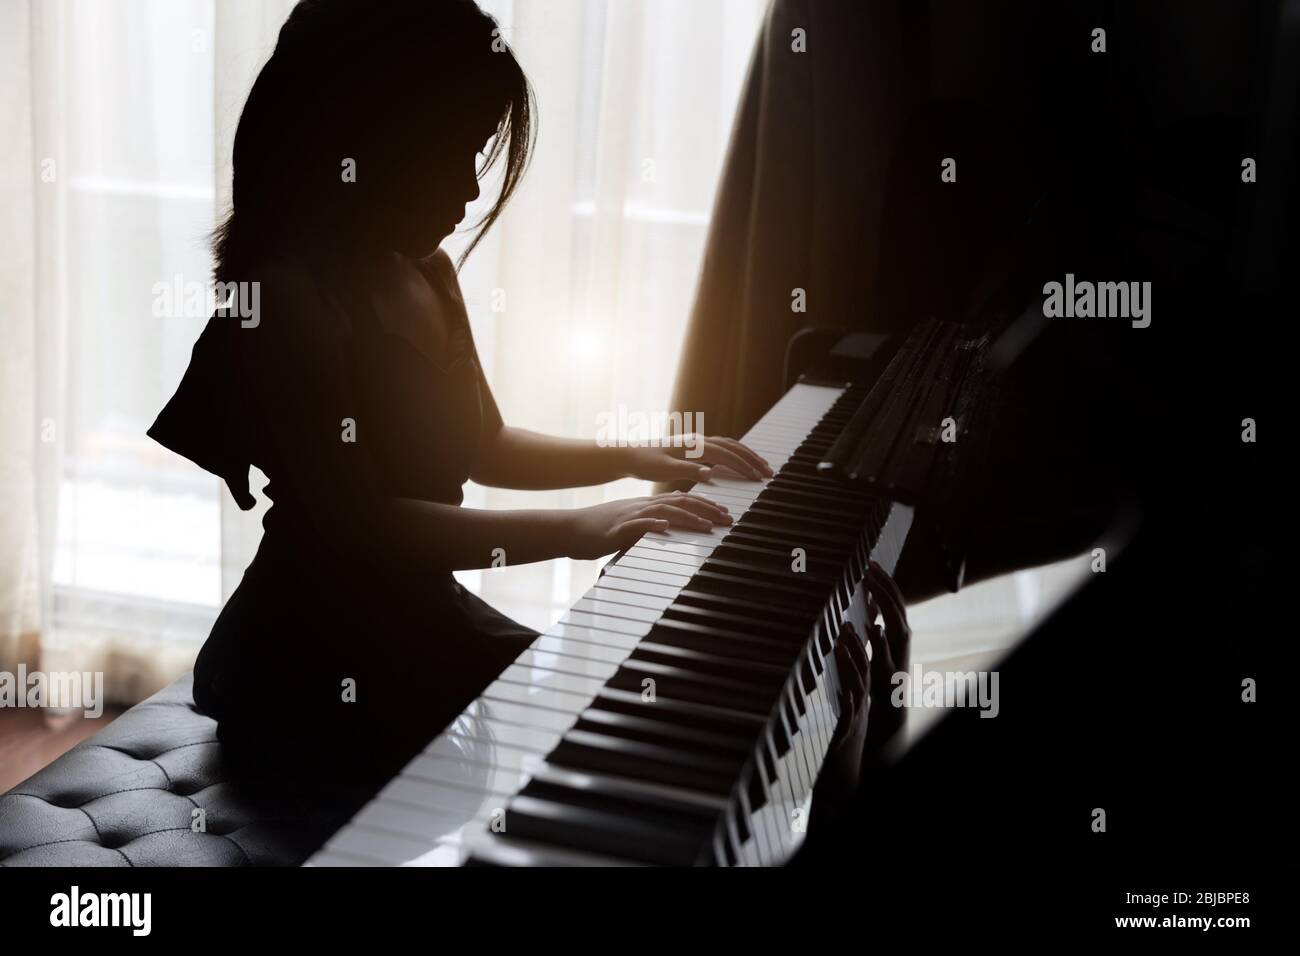 i bambini silhouette che giocano al pianoforte hanno talento e si esercitano per aumentare le capacità musicali per l'occupazione futura. Foto Stock